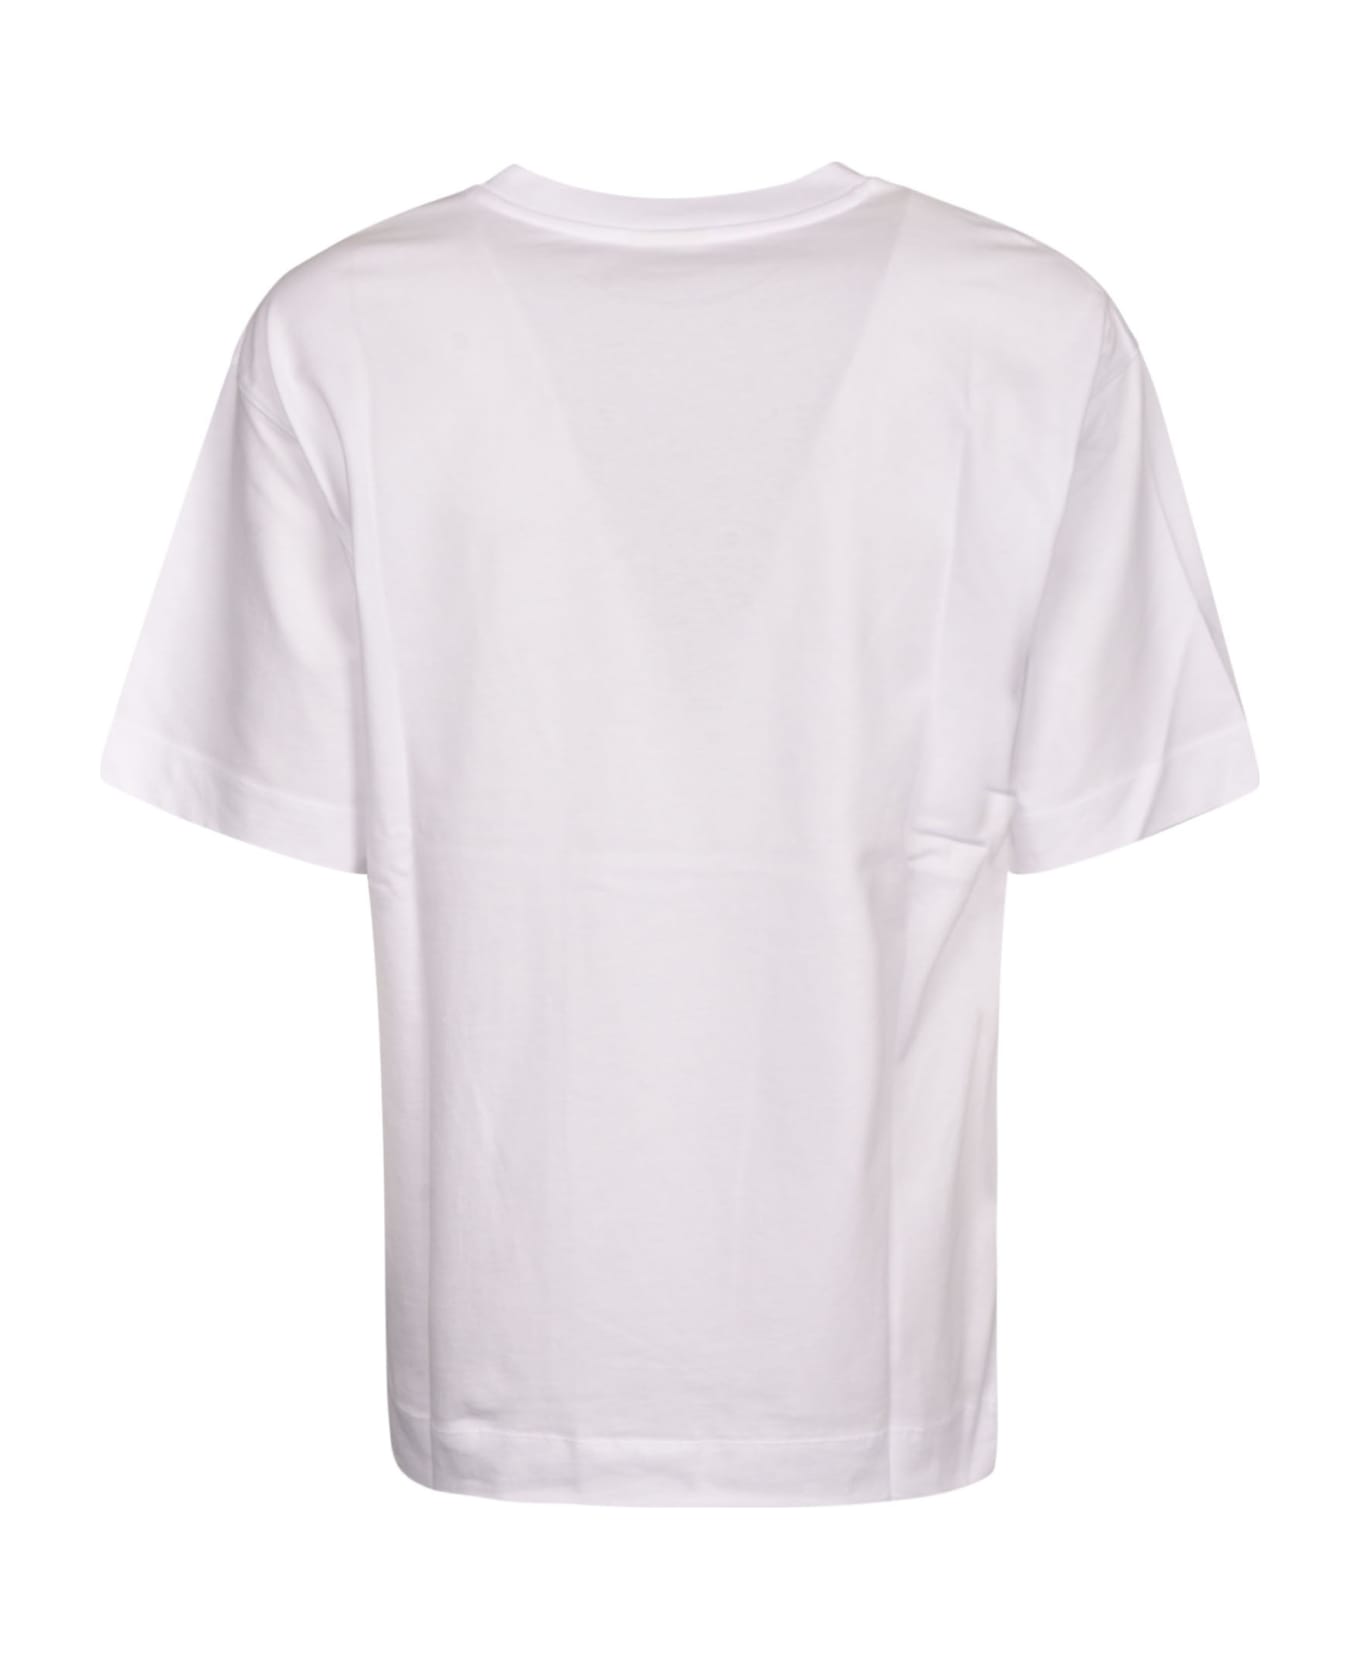 Dries Van Noten Dream Baby Dream T-shirt - White